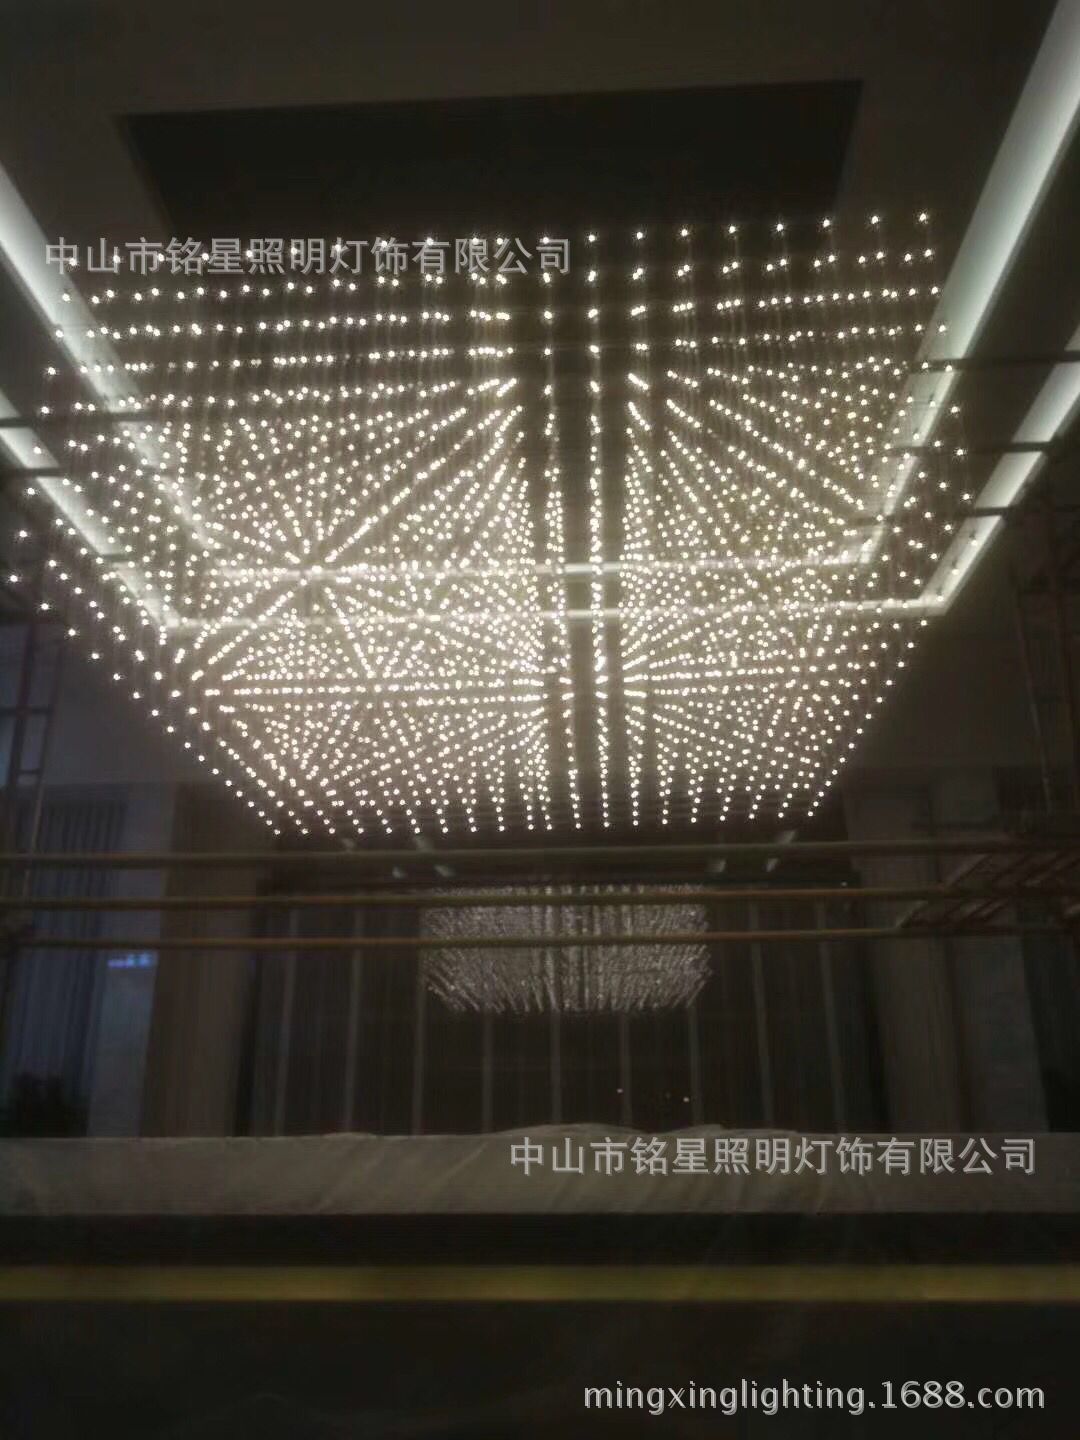 专业酒店大堂大型光立方吊灯厂家定制售楼部展厅LED光立方体灯具示例图24